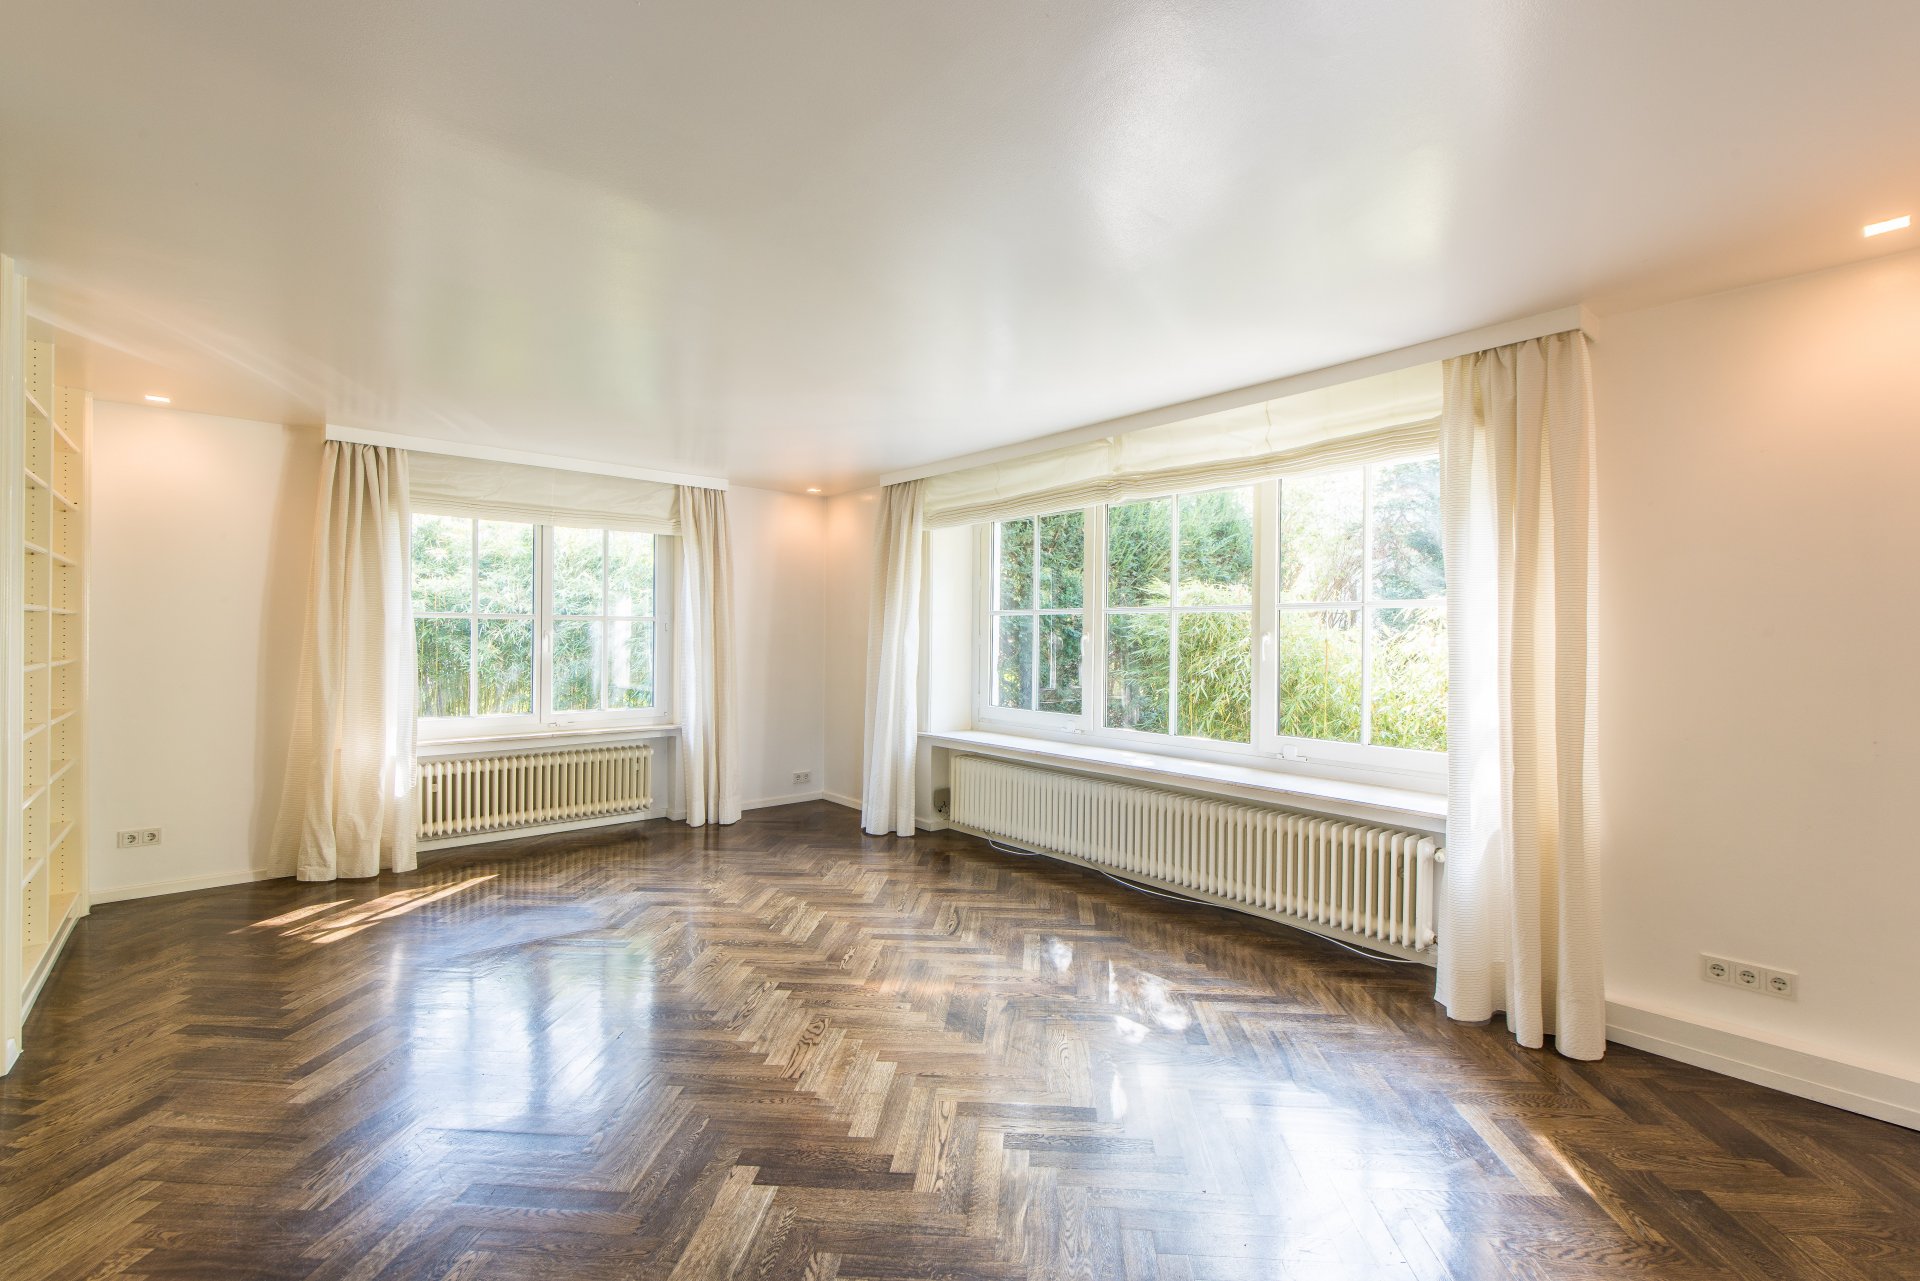 Wohnzimmer mit Echtholzpakett und großen Fenstern - Oliver Reifferscheid - Immobilienmakler Darmstadt